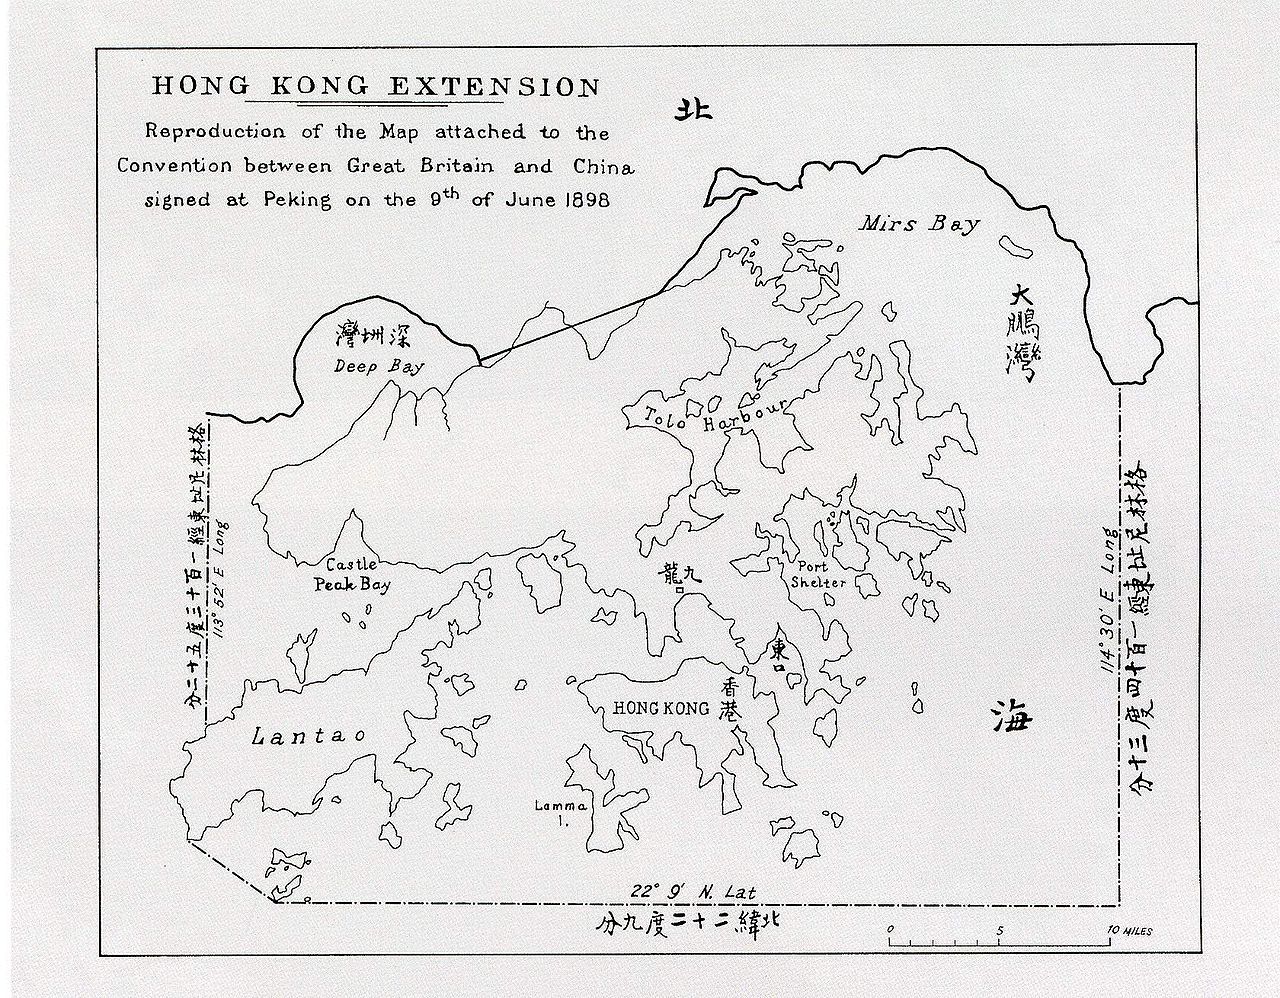 清政府与英国签订《展拓香港界址专条》——租新界给英国